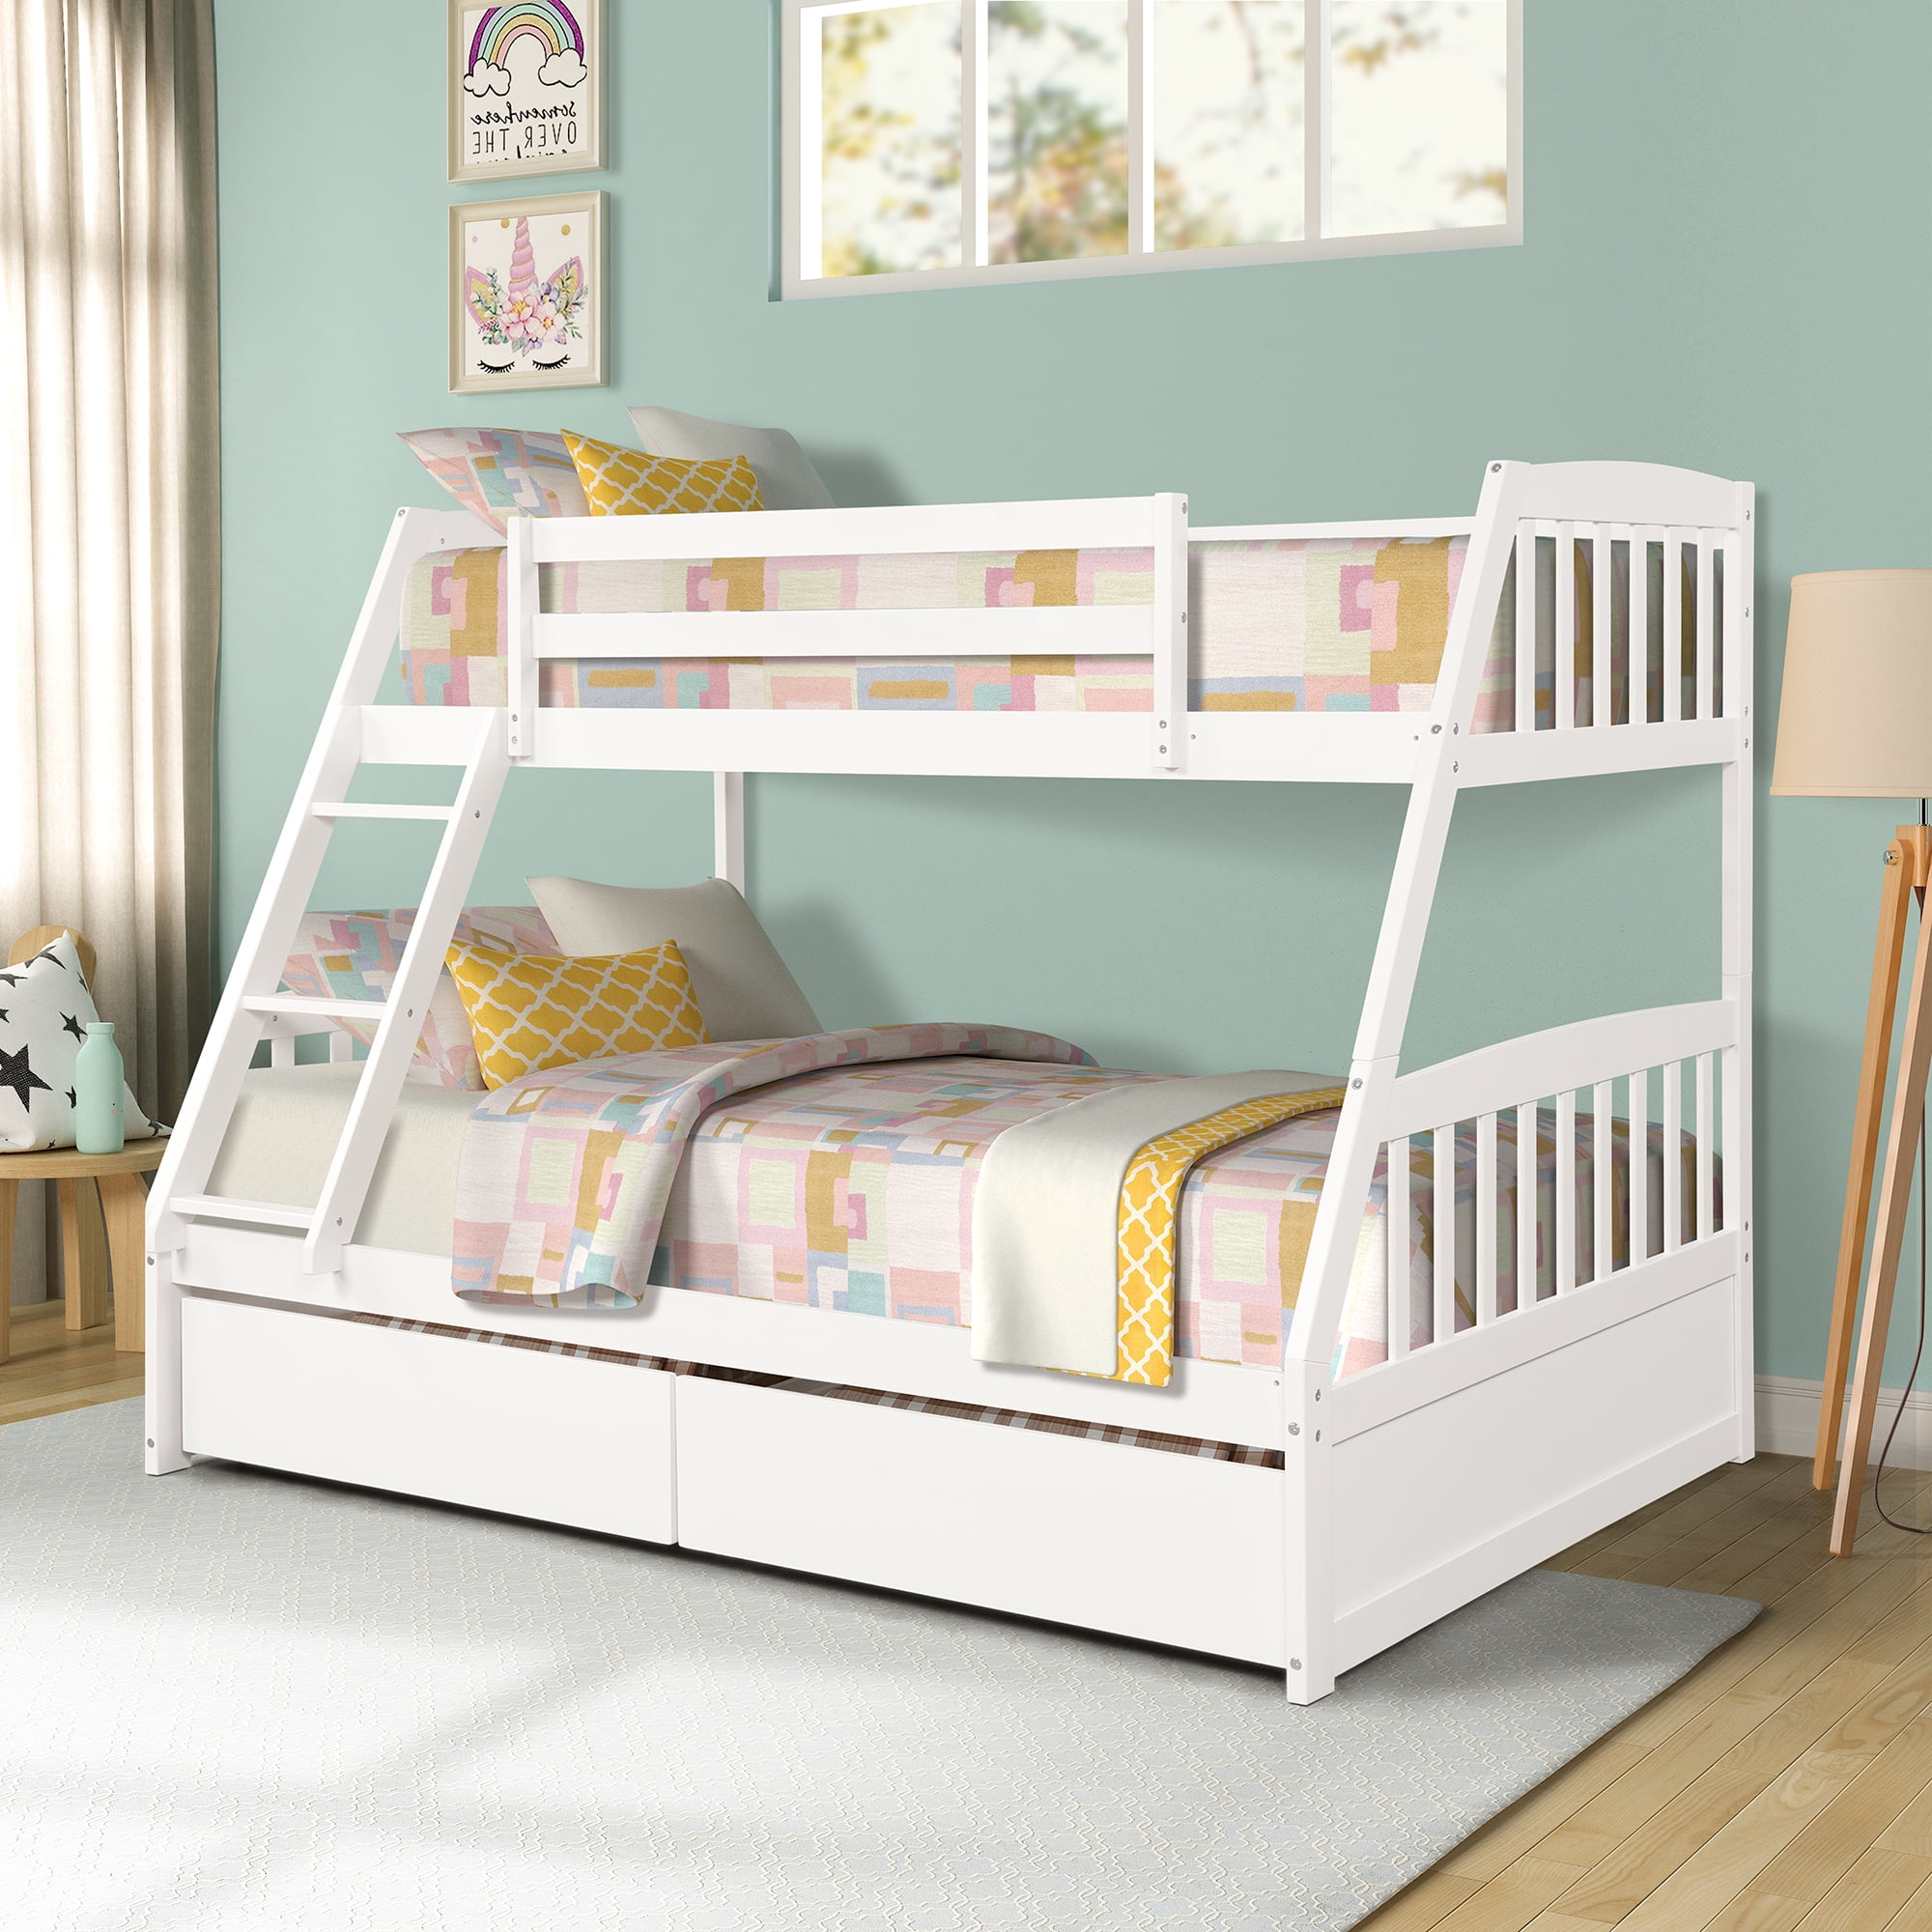 Details about   Frame Bed Kids Toddler Furniture Bedroom Bunk Bed Twin Multi-Color 